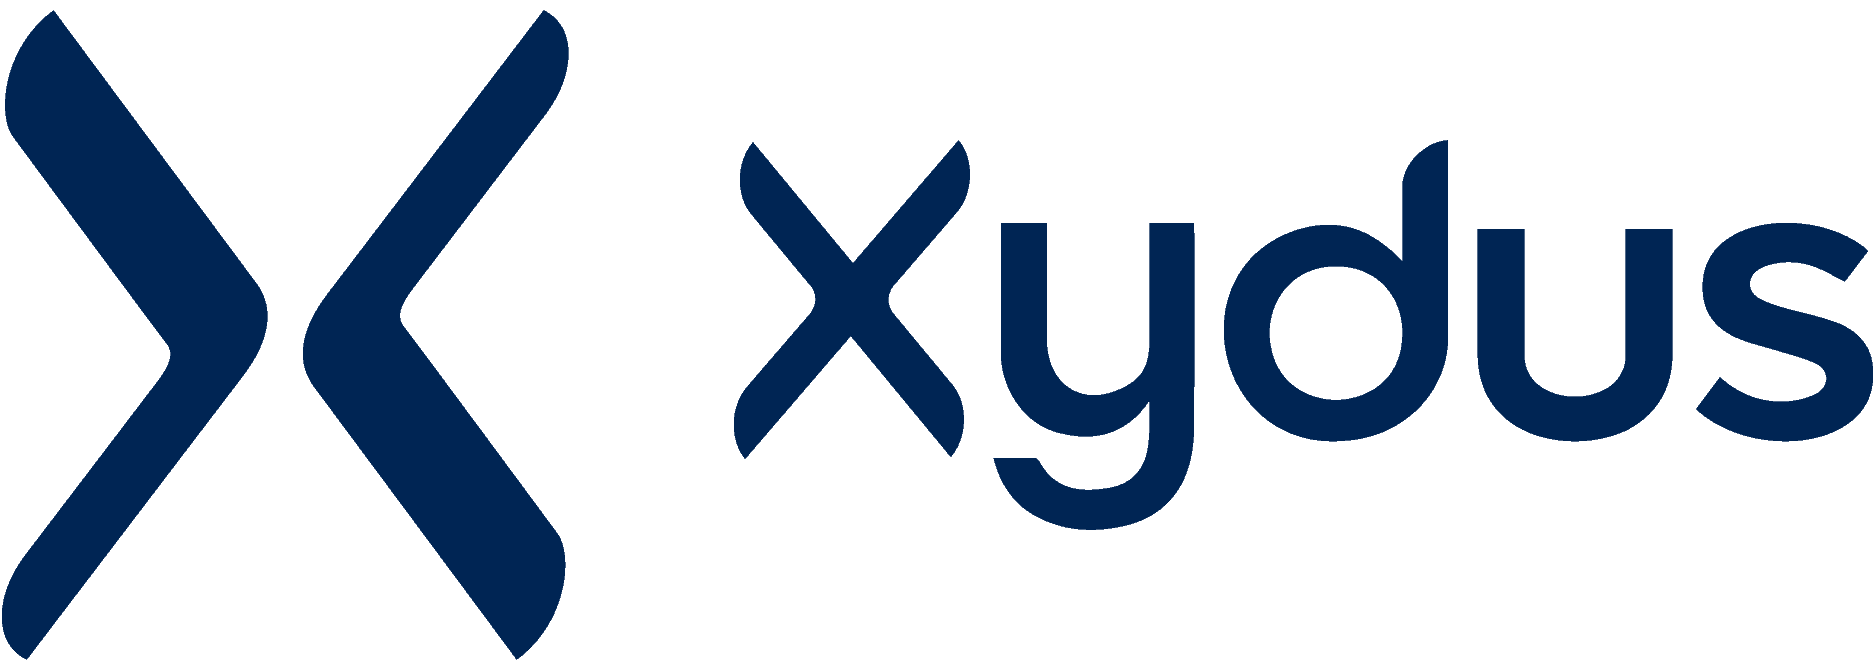 Xydus Logo